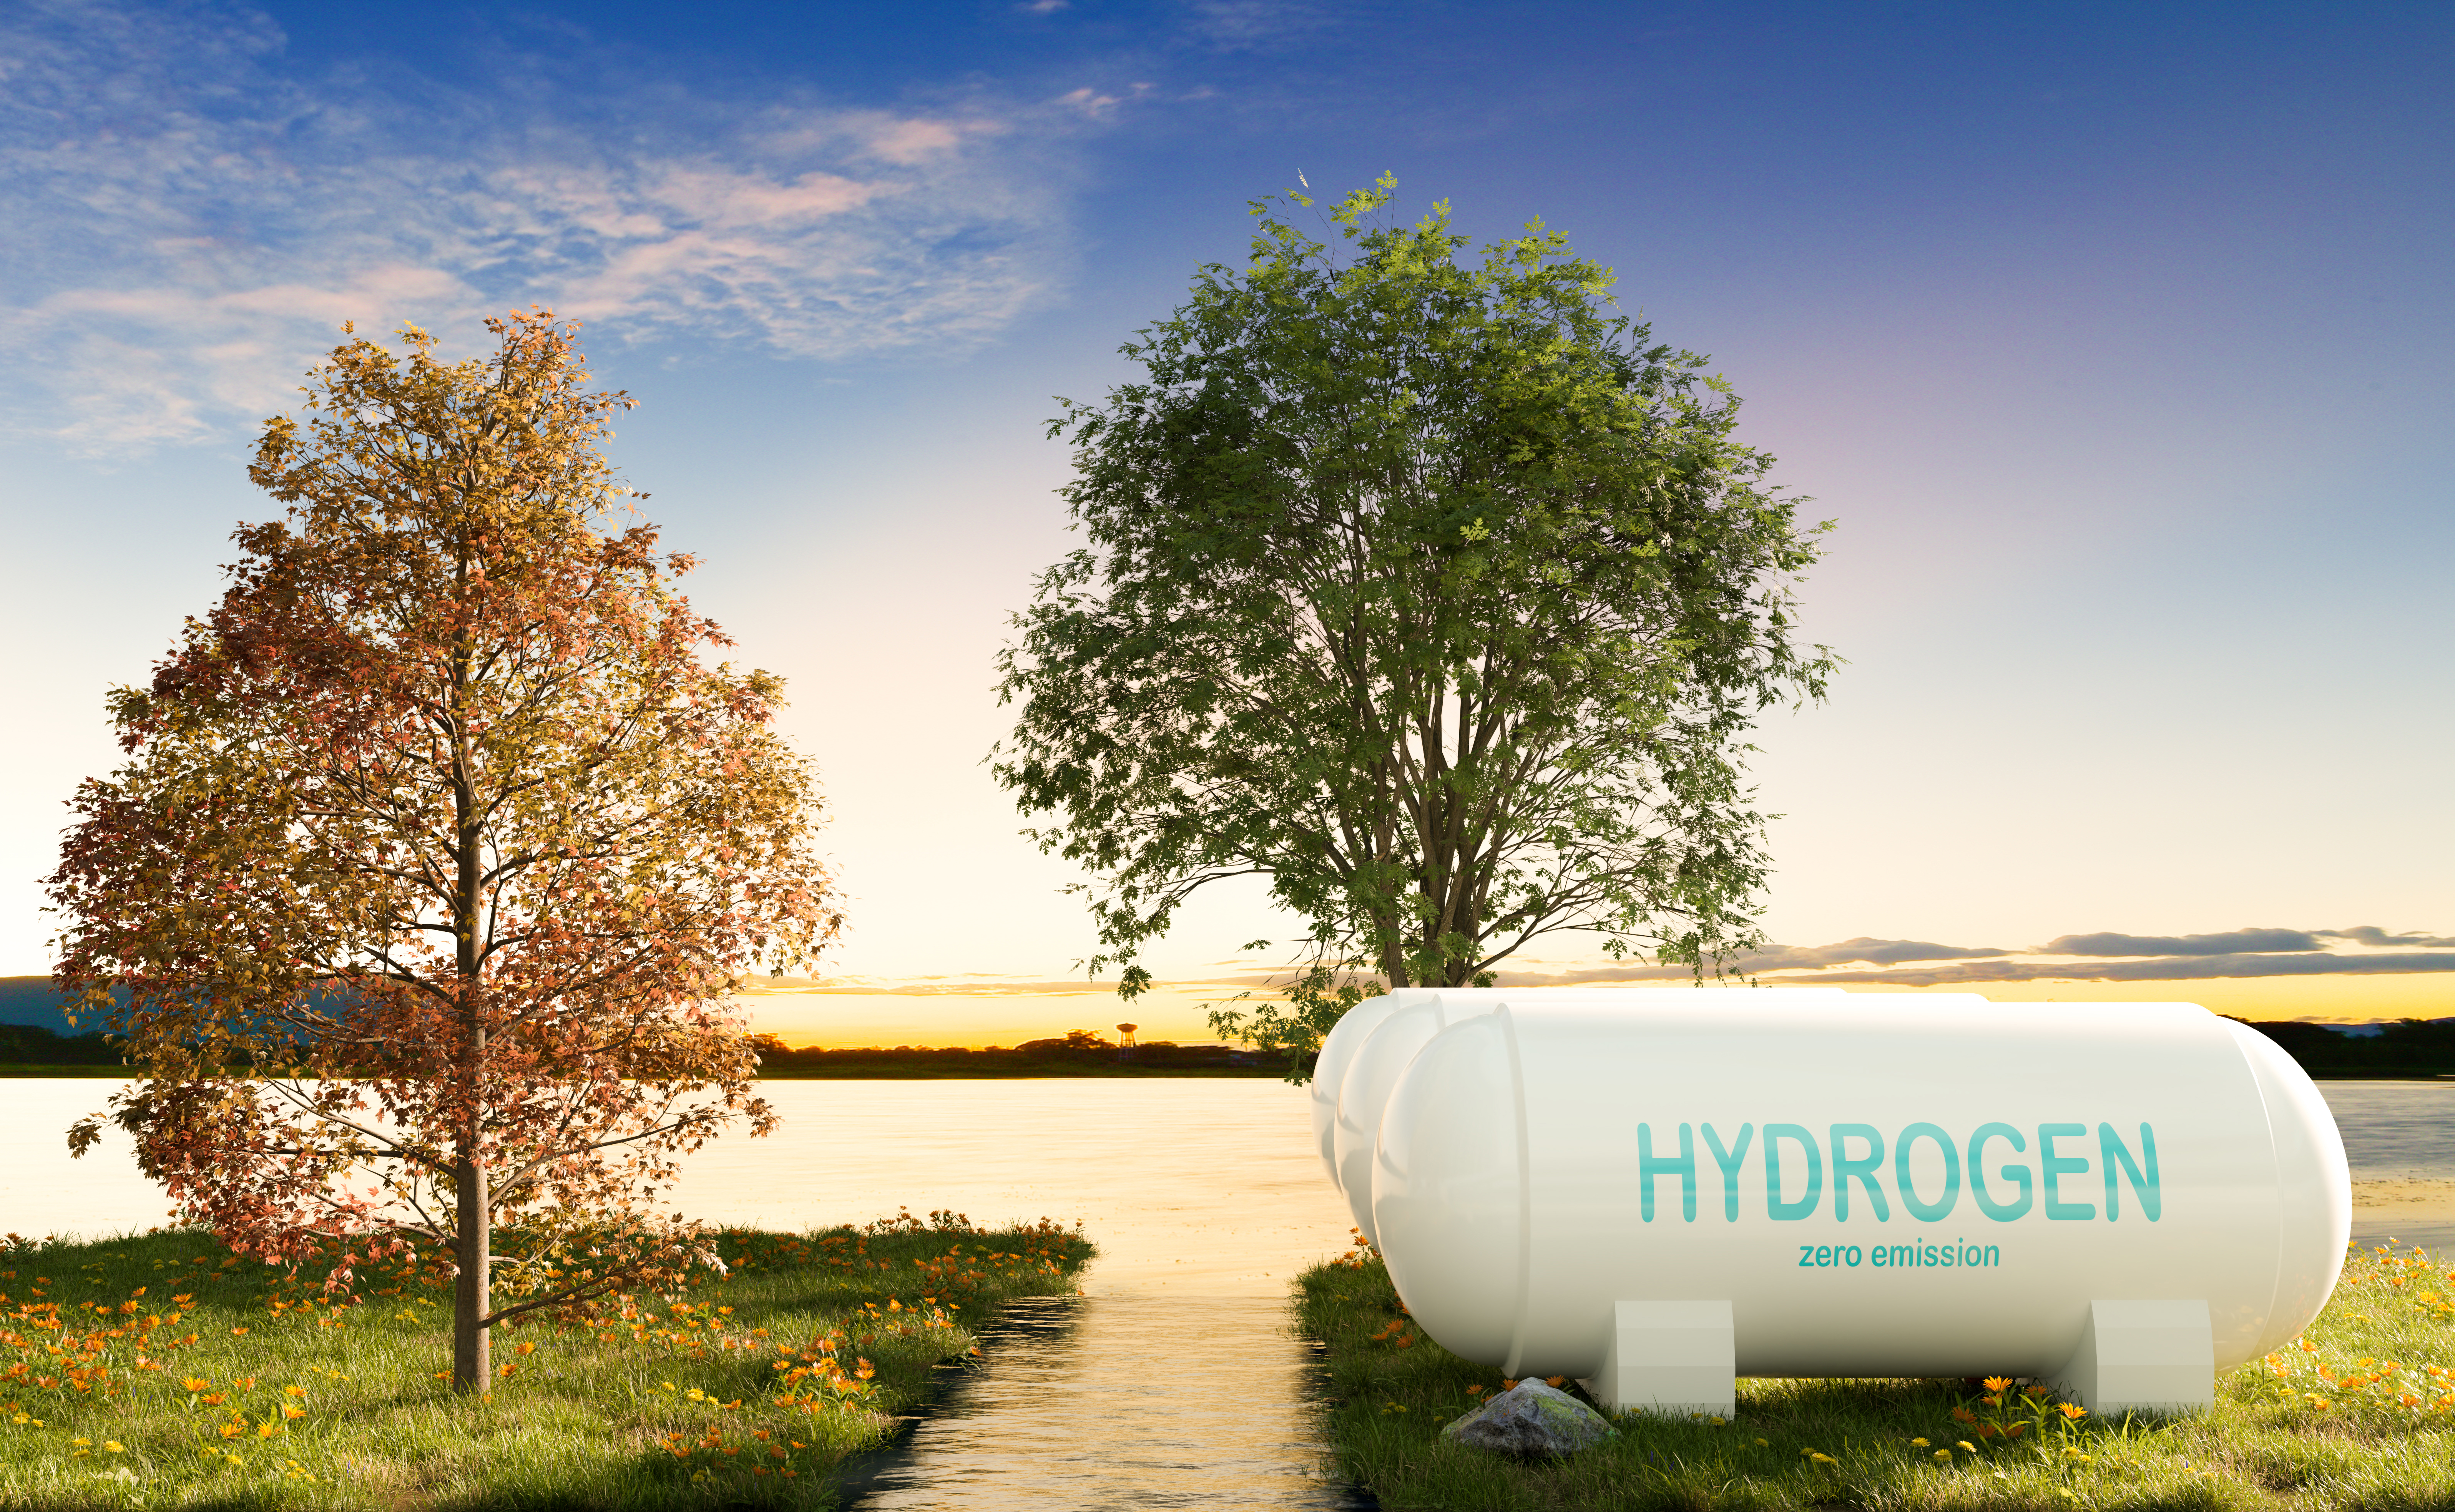 Hydrogen Power Storage Nearly River In Sunset Scen 2023 11 27 05 00 52 Utc